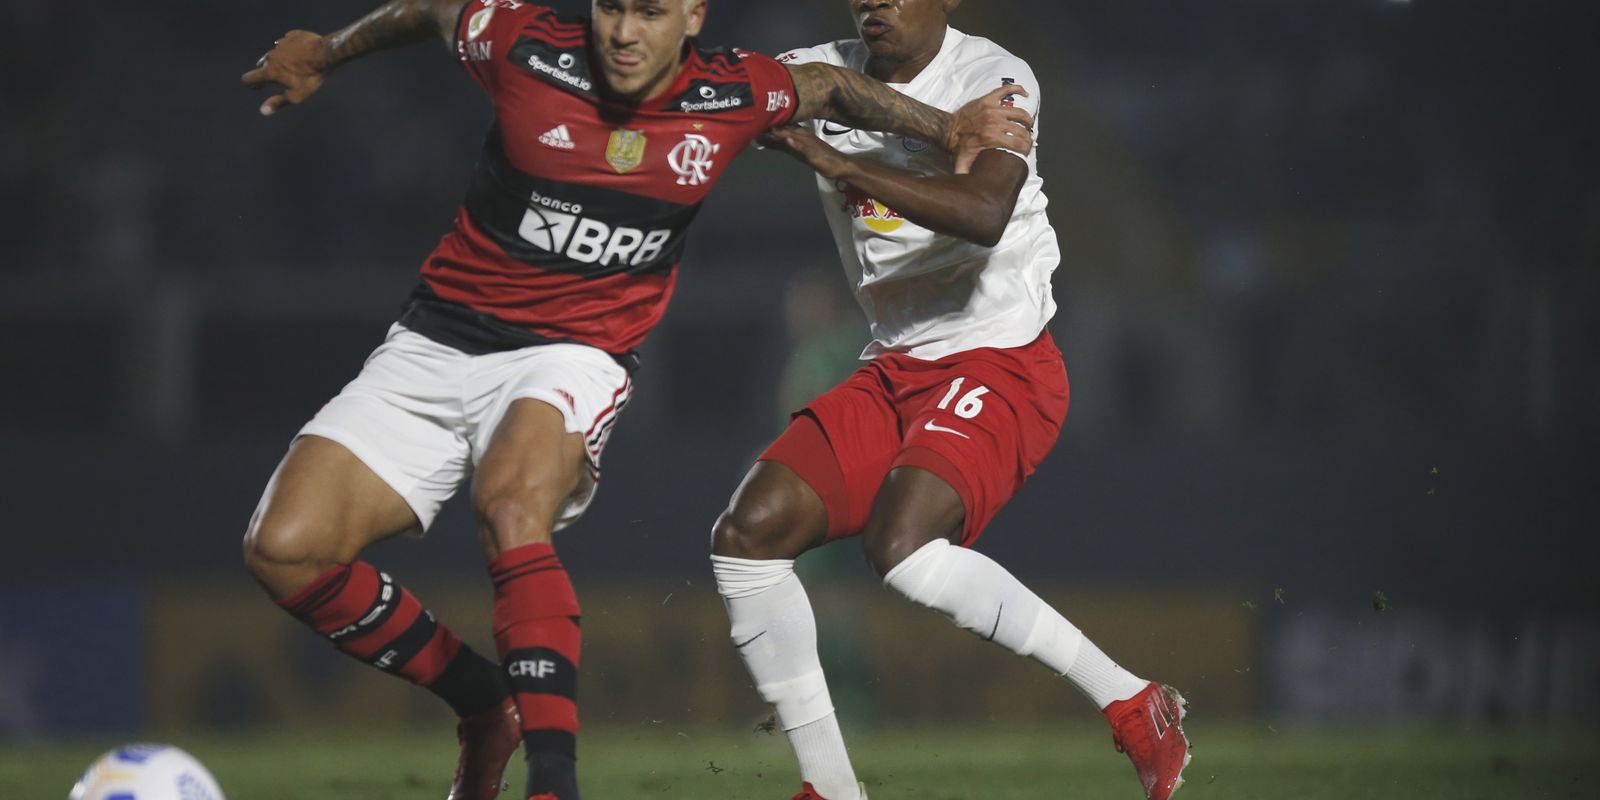 Flamengo x Red Bull Bragantino ao vivo e online, onde assistir